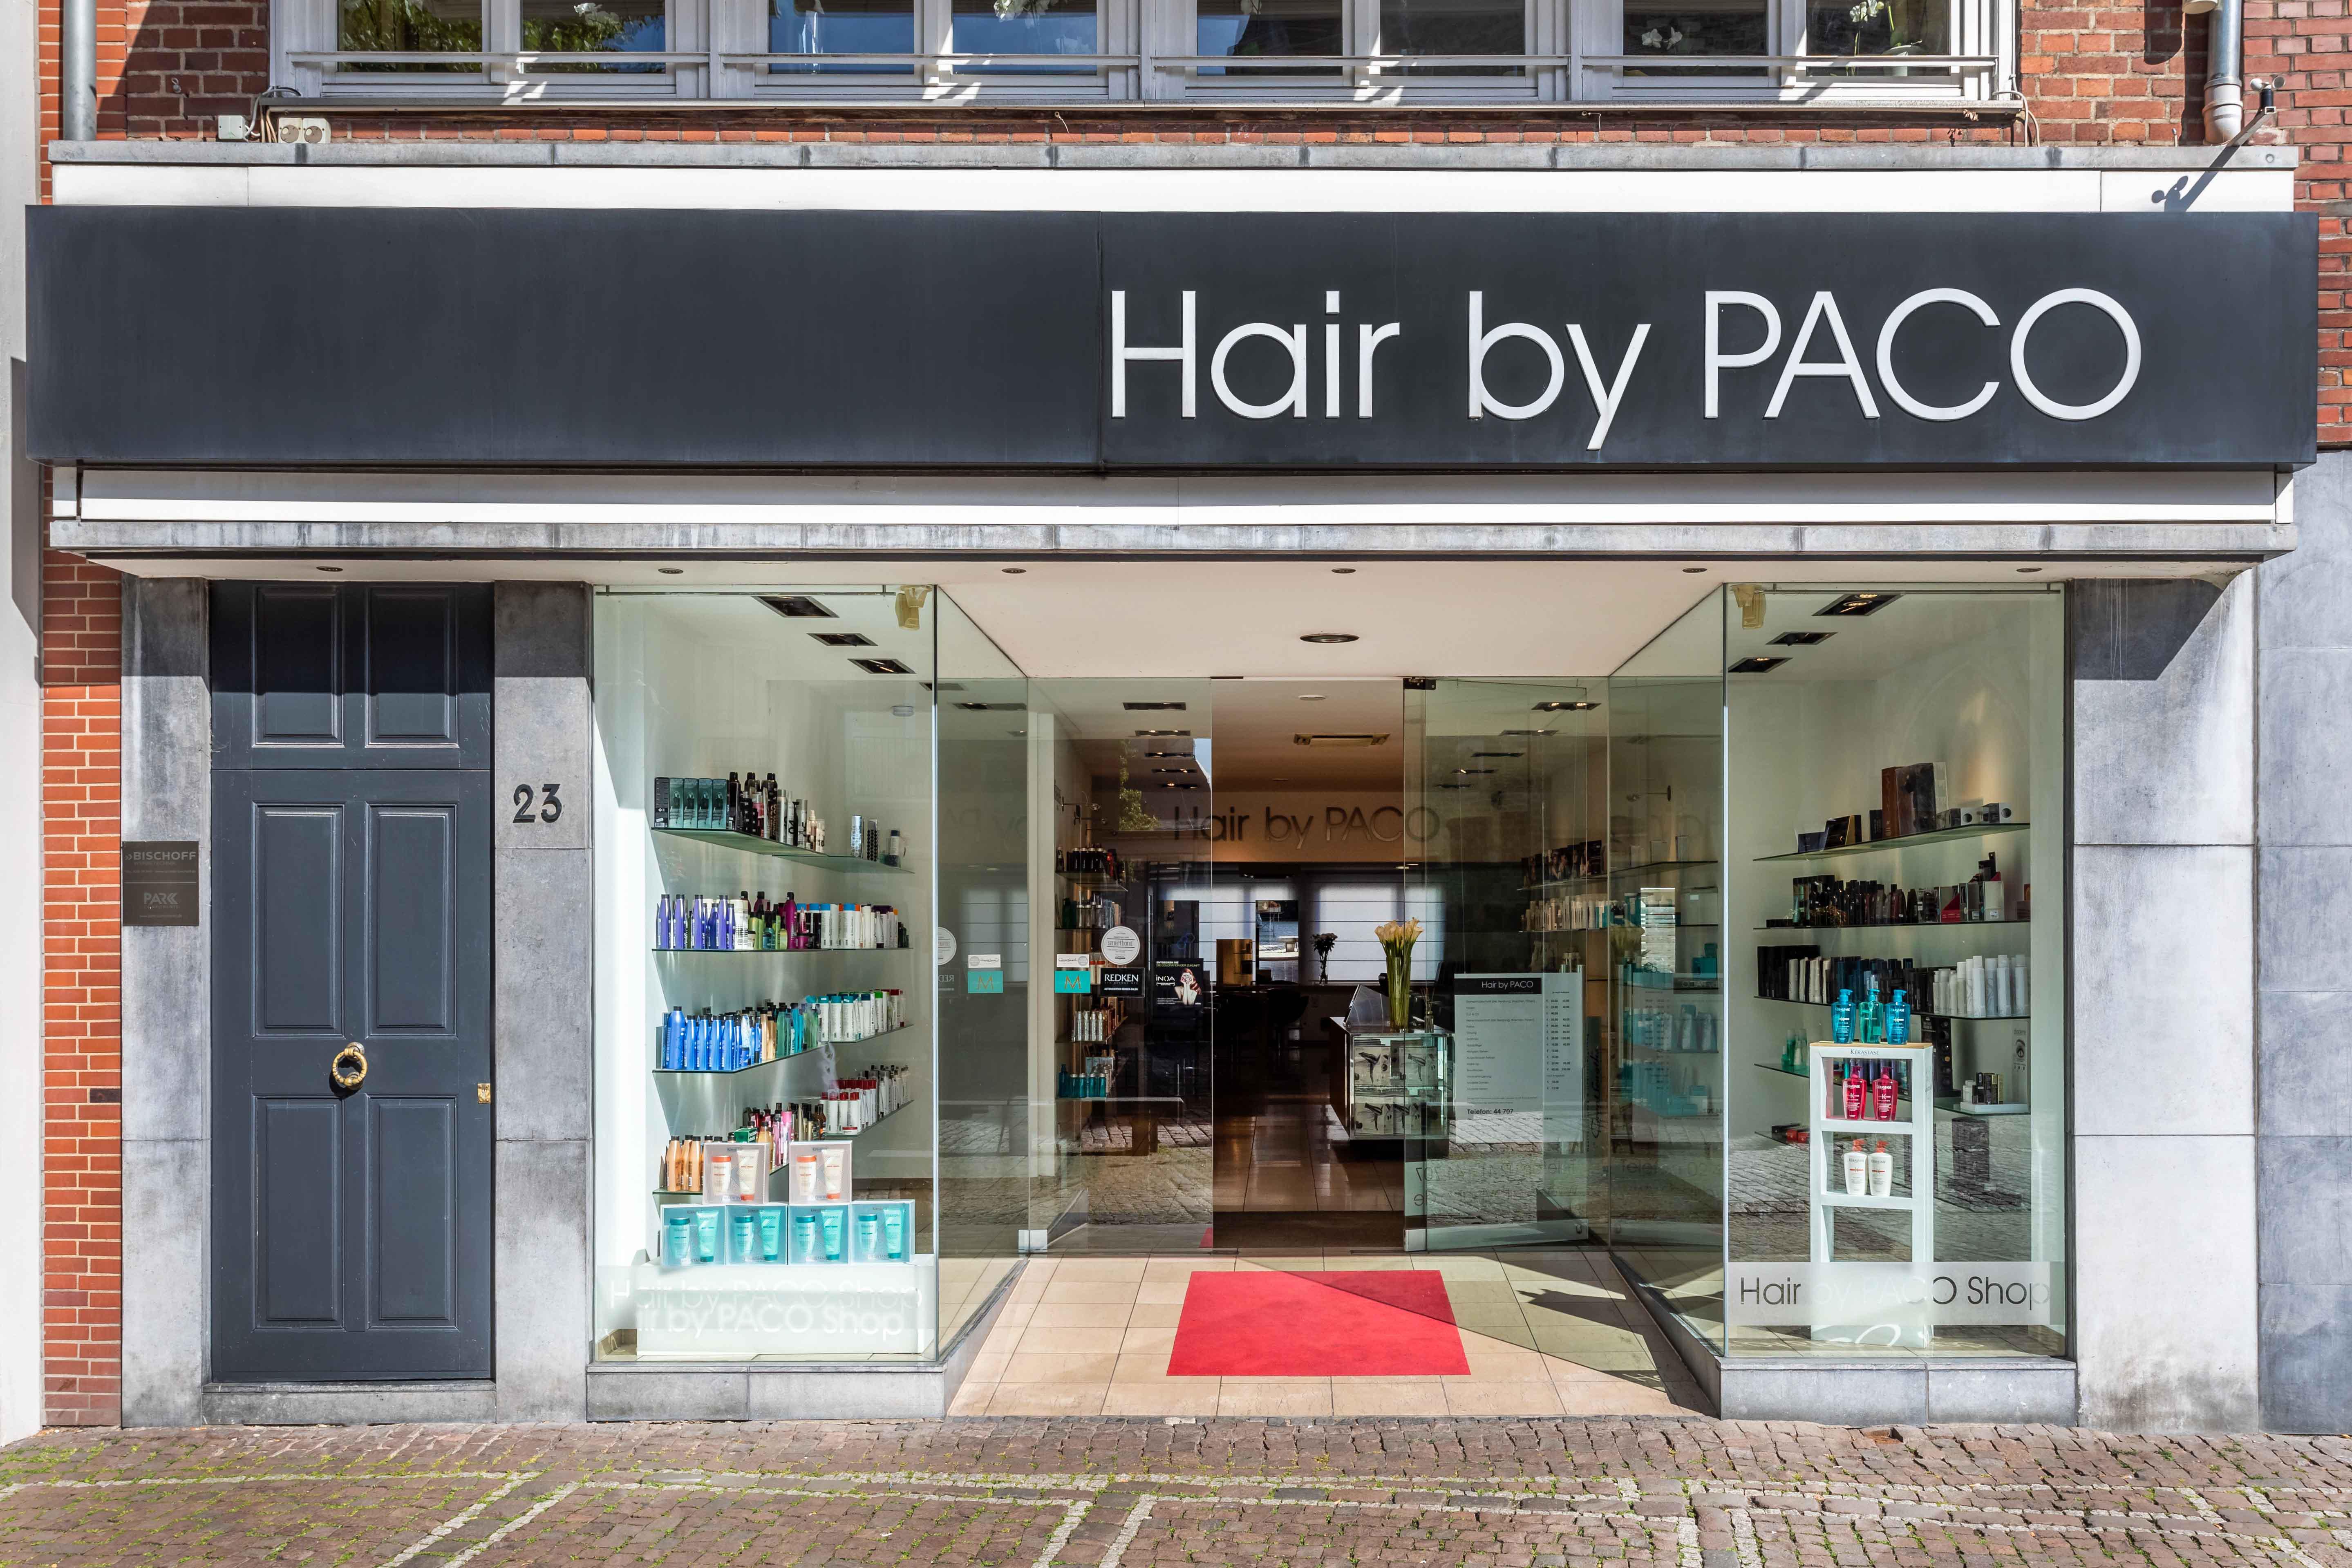 Hair by PACO | Friseur Aachen, Markt 23 in Aachen